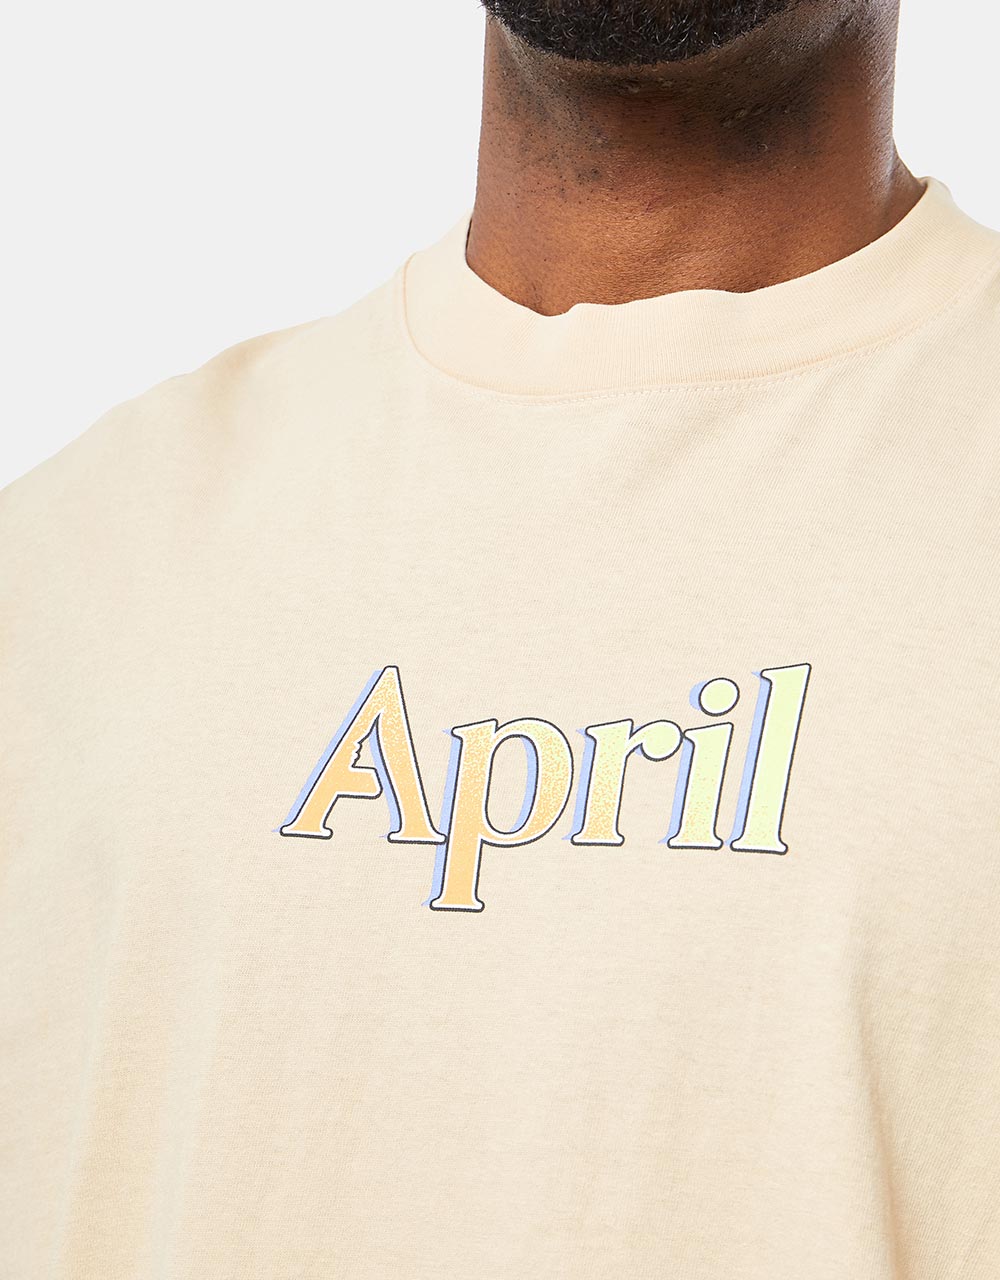 April AP 3000 T-Shirt - Beige